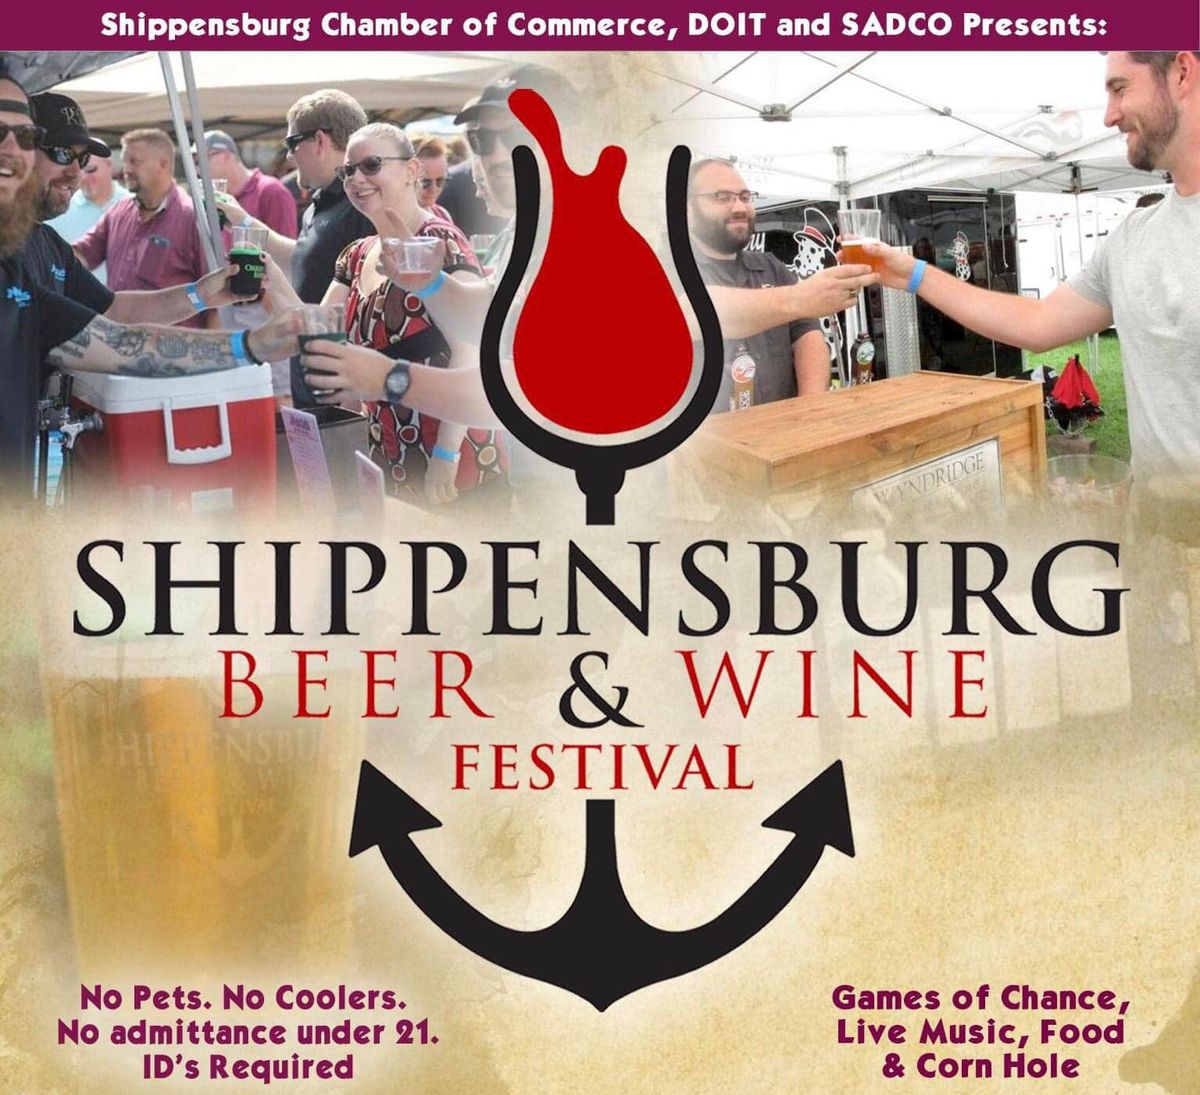 Shippensburg Beer & Wine Festival